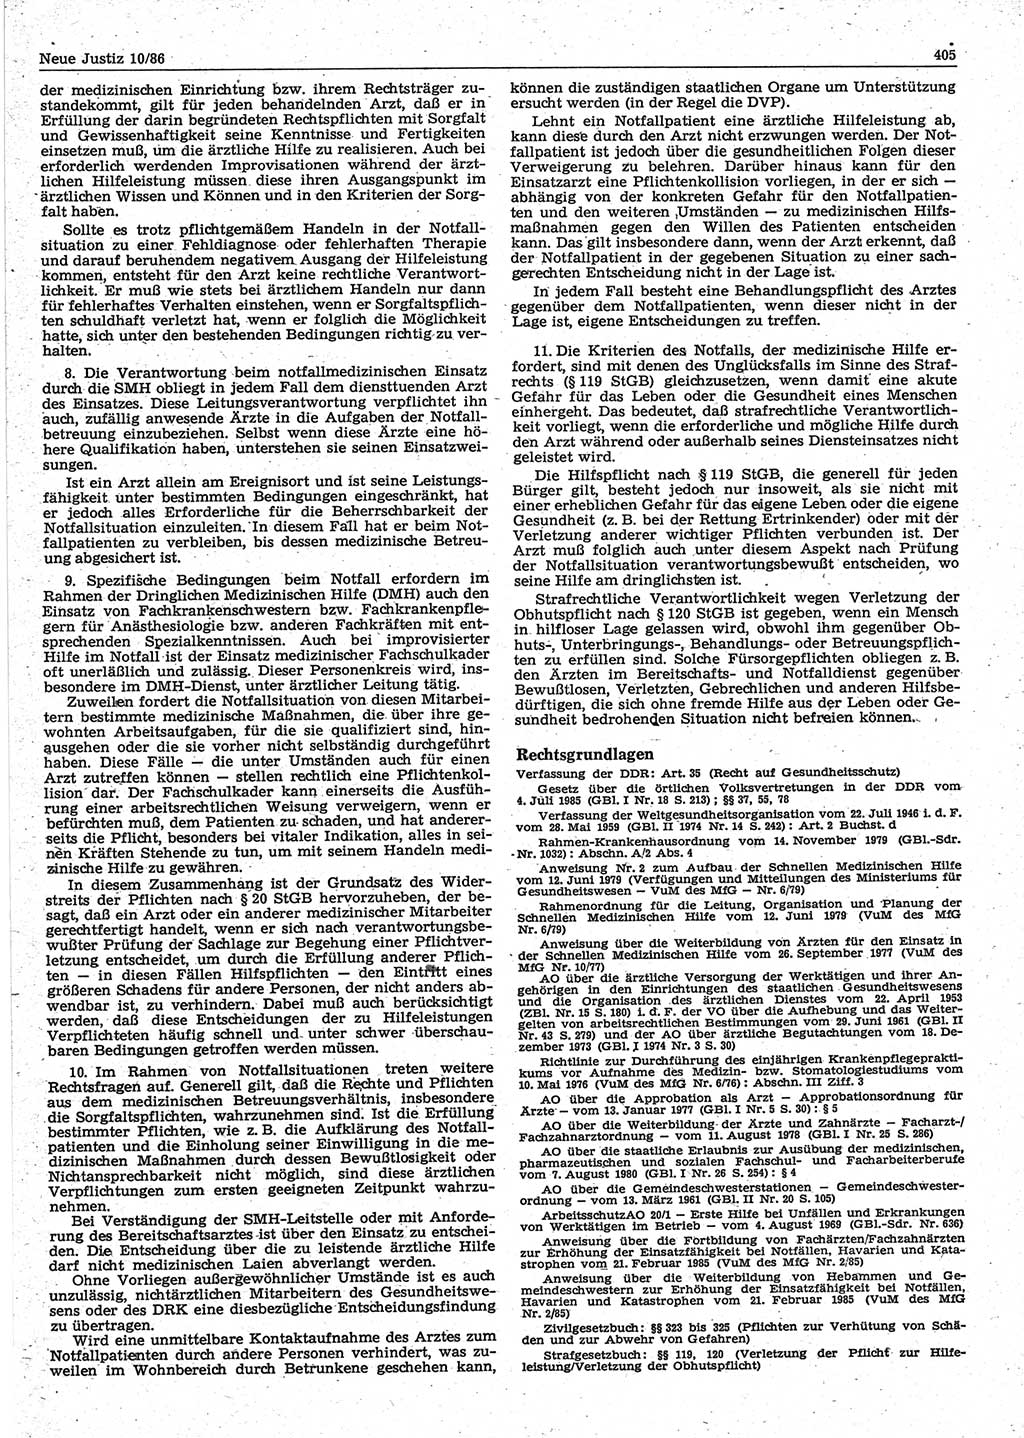 Neue Justiz (NJ), Zeitschrift für sozialistisches Recht und Gesetzlichkeit [Deutsche Demokratische Republik (DDR)], 40. Jahrgang 1986, Seite 405 (NJ DDR 1986, S. 405)